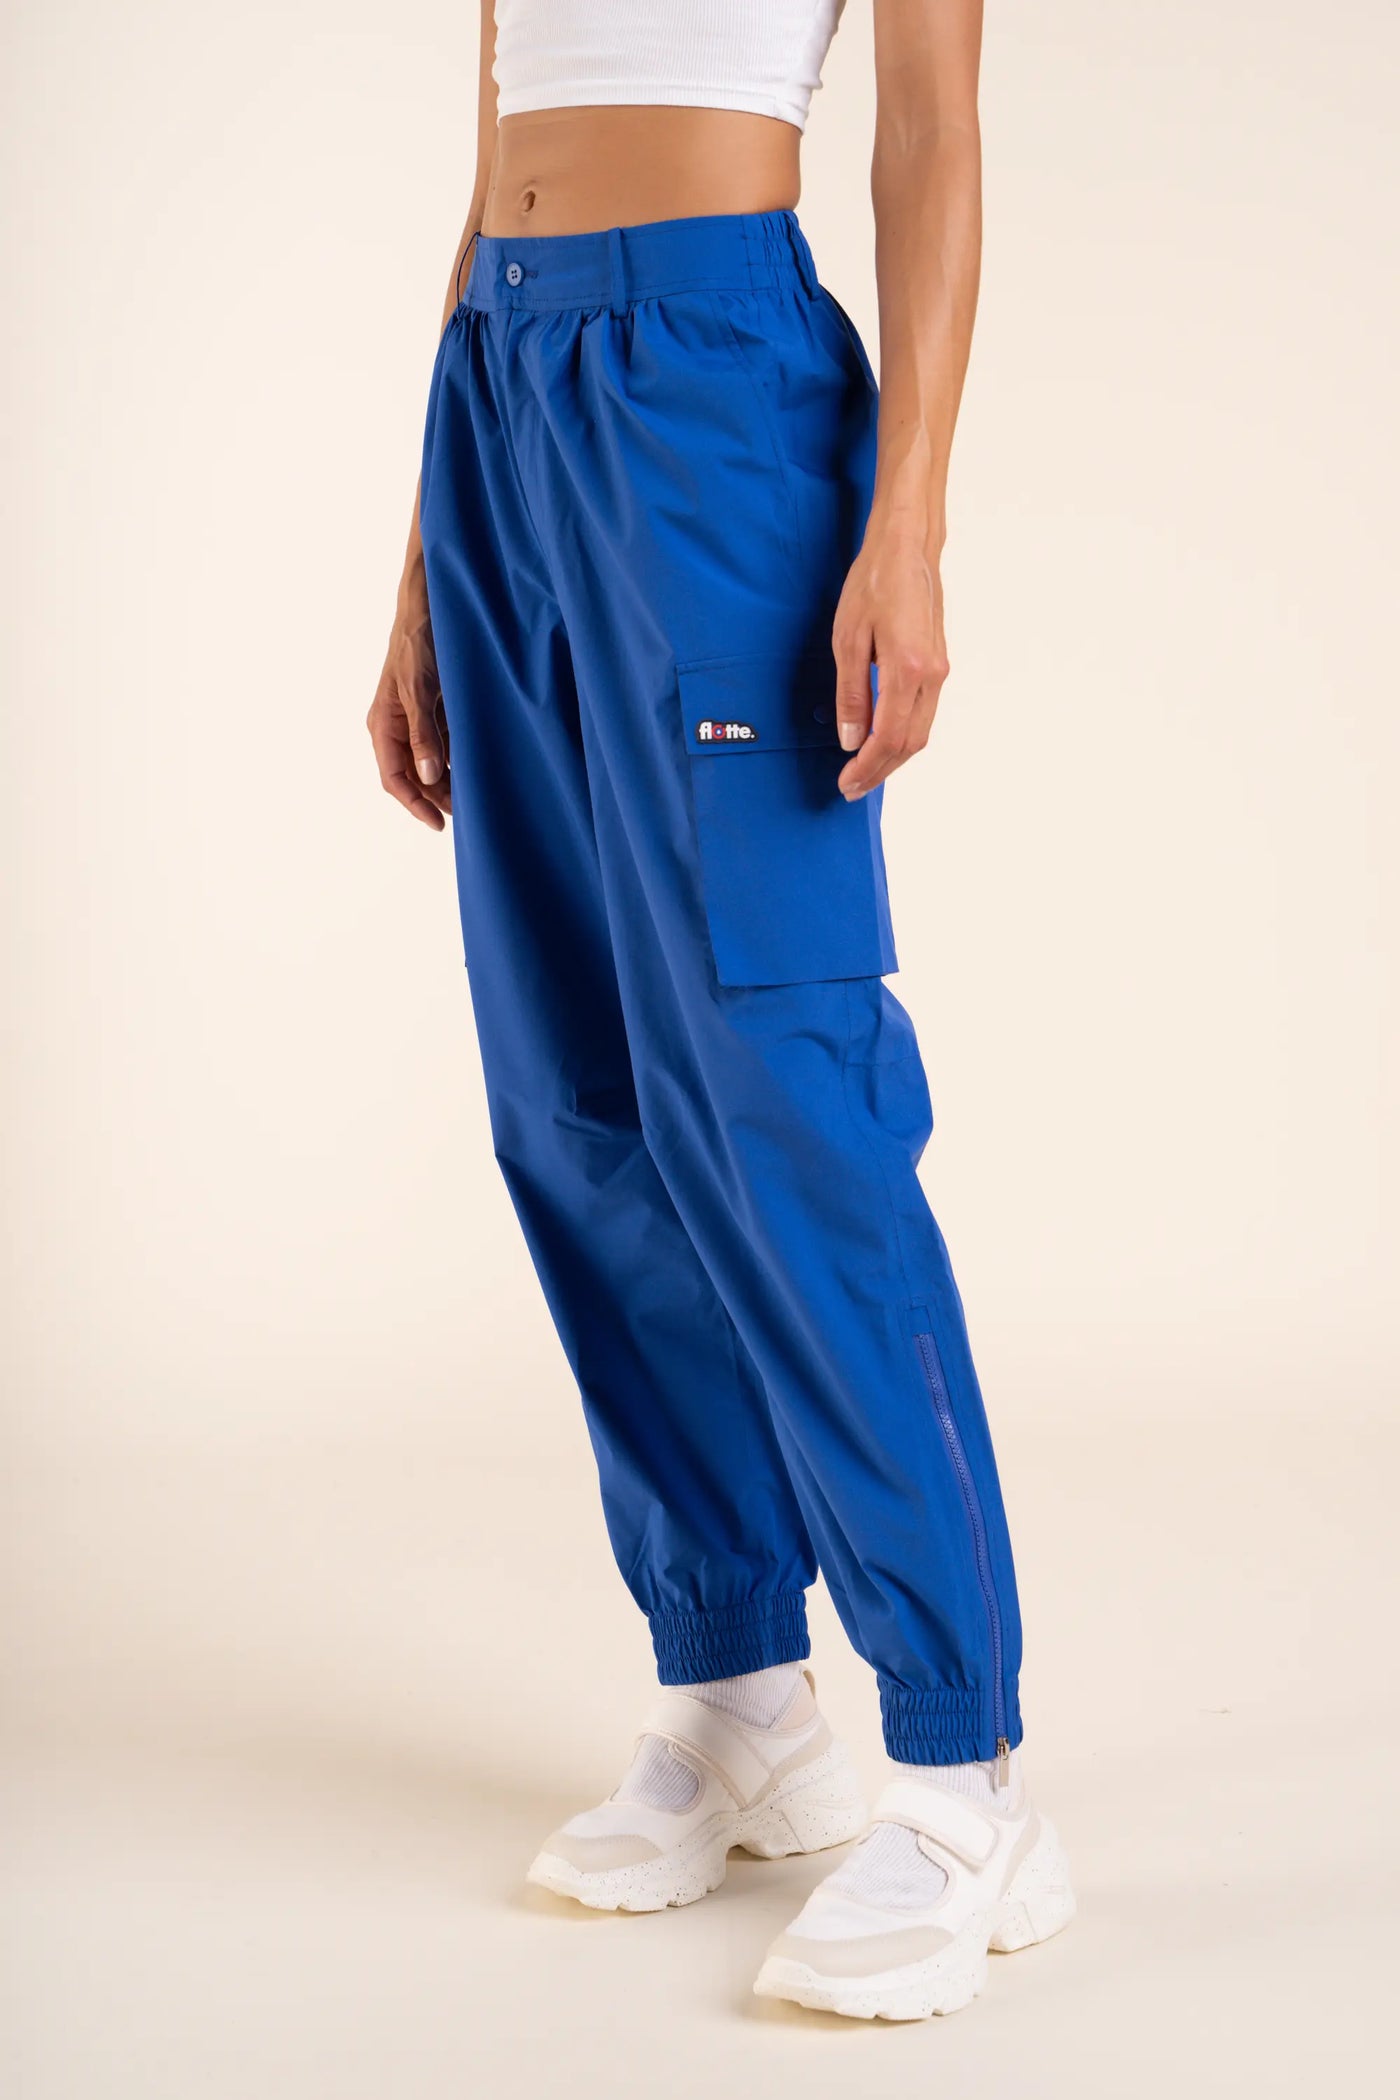 Pantalon imperméable Gambetta cargo multipoches #couleur_bleu-roi